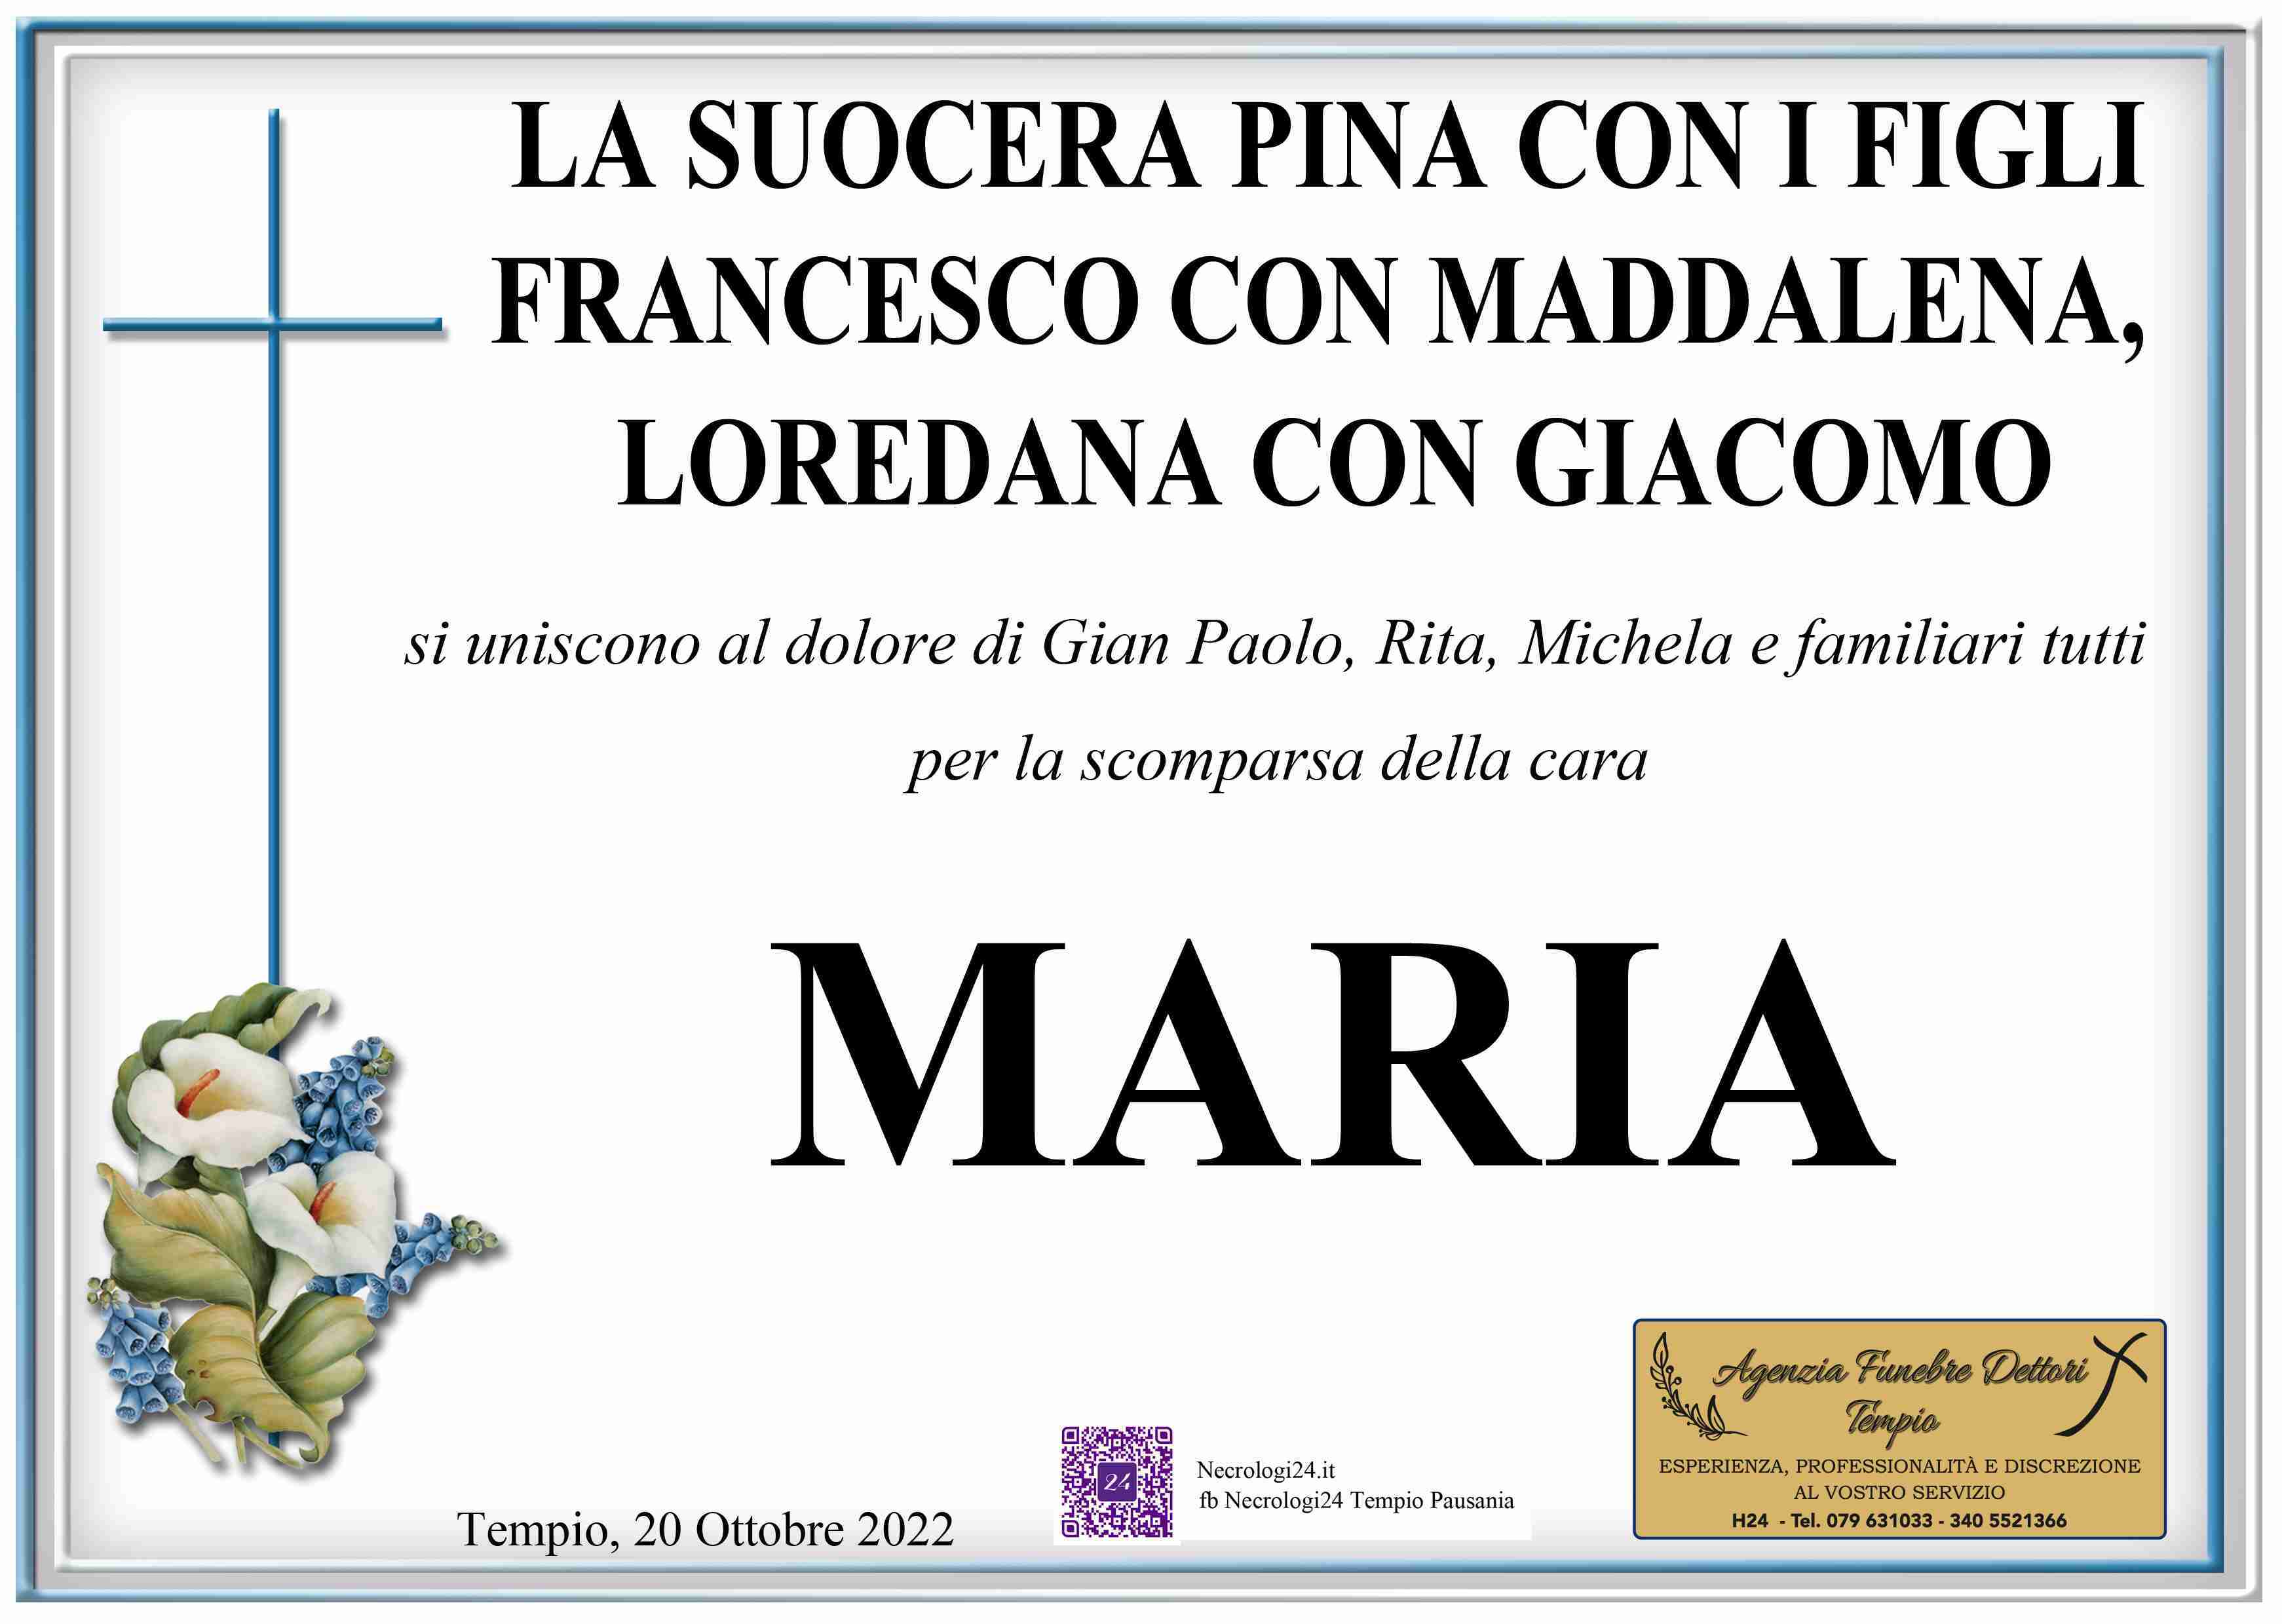 Maria Maddalena Magri